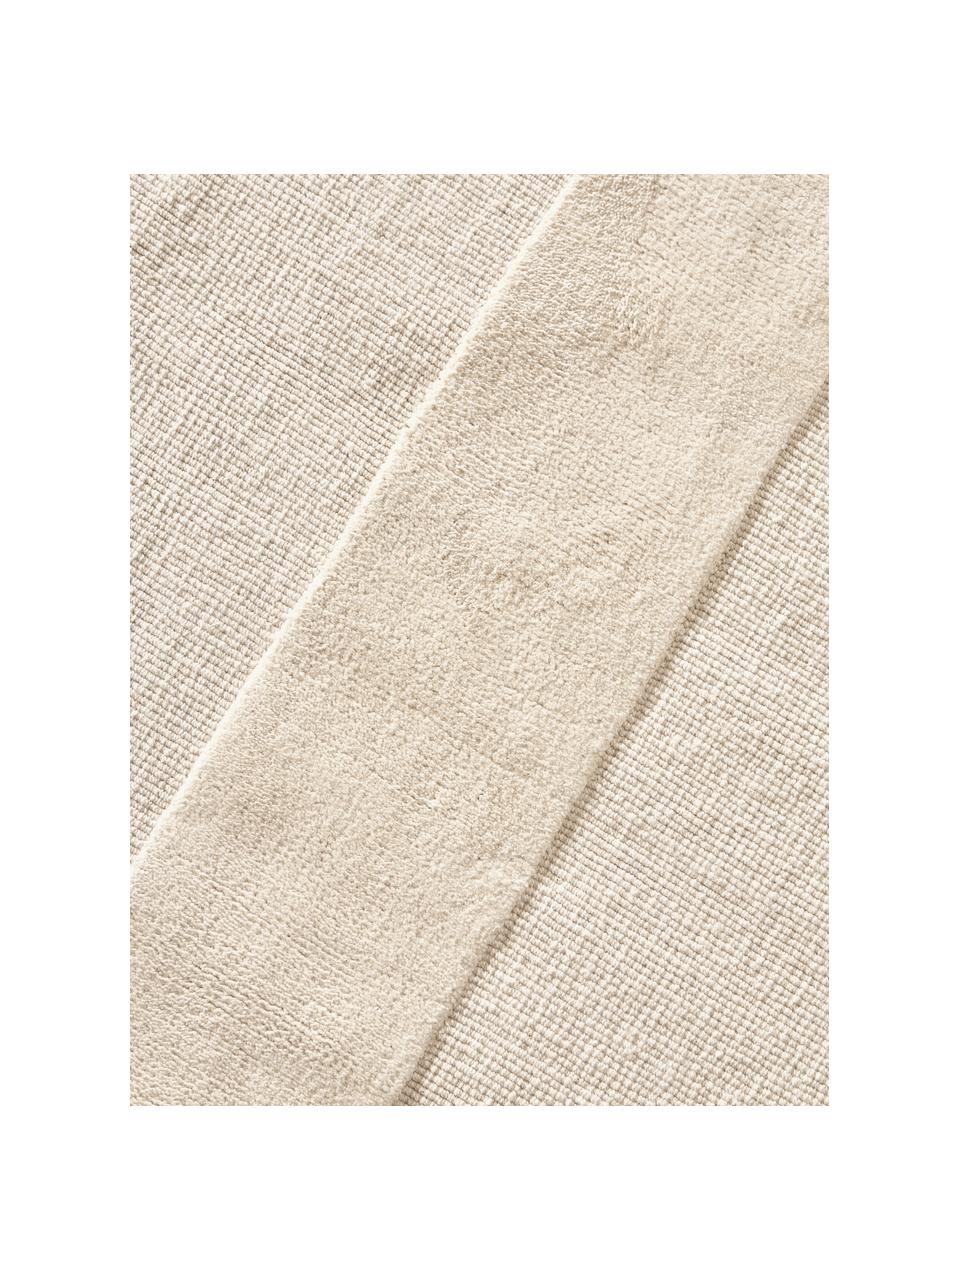 Tappeto in cotone tessuto a mano con motivo in rilievo Dania, 100% cotone, Bianco crema, Larg. 200 x Lung. 300 cm (taglia L)